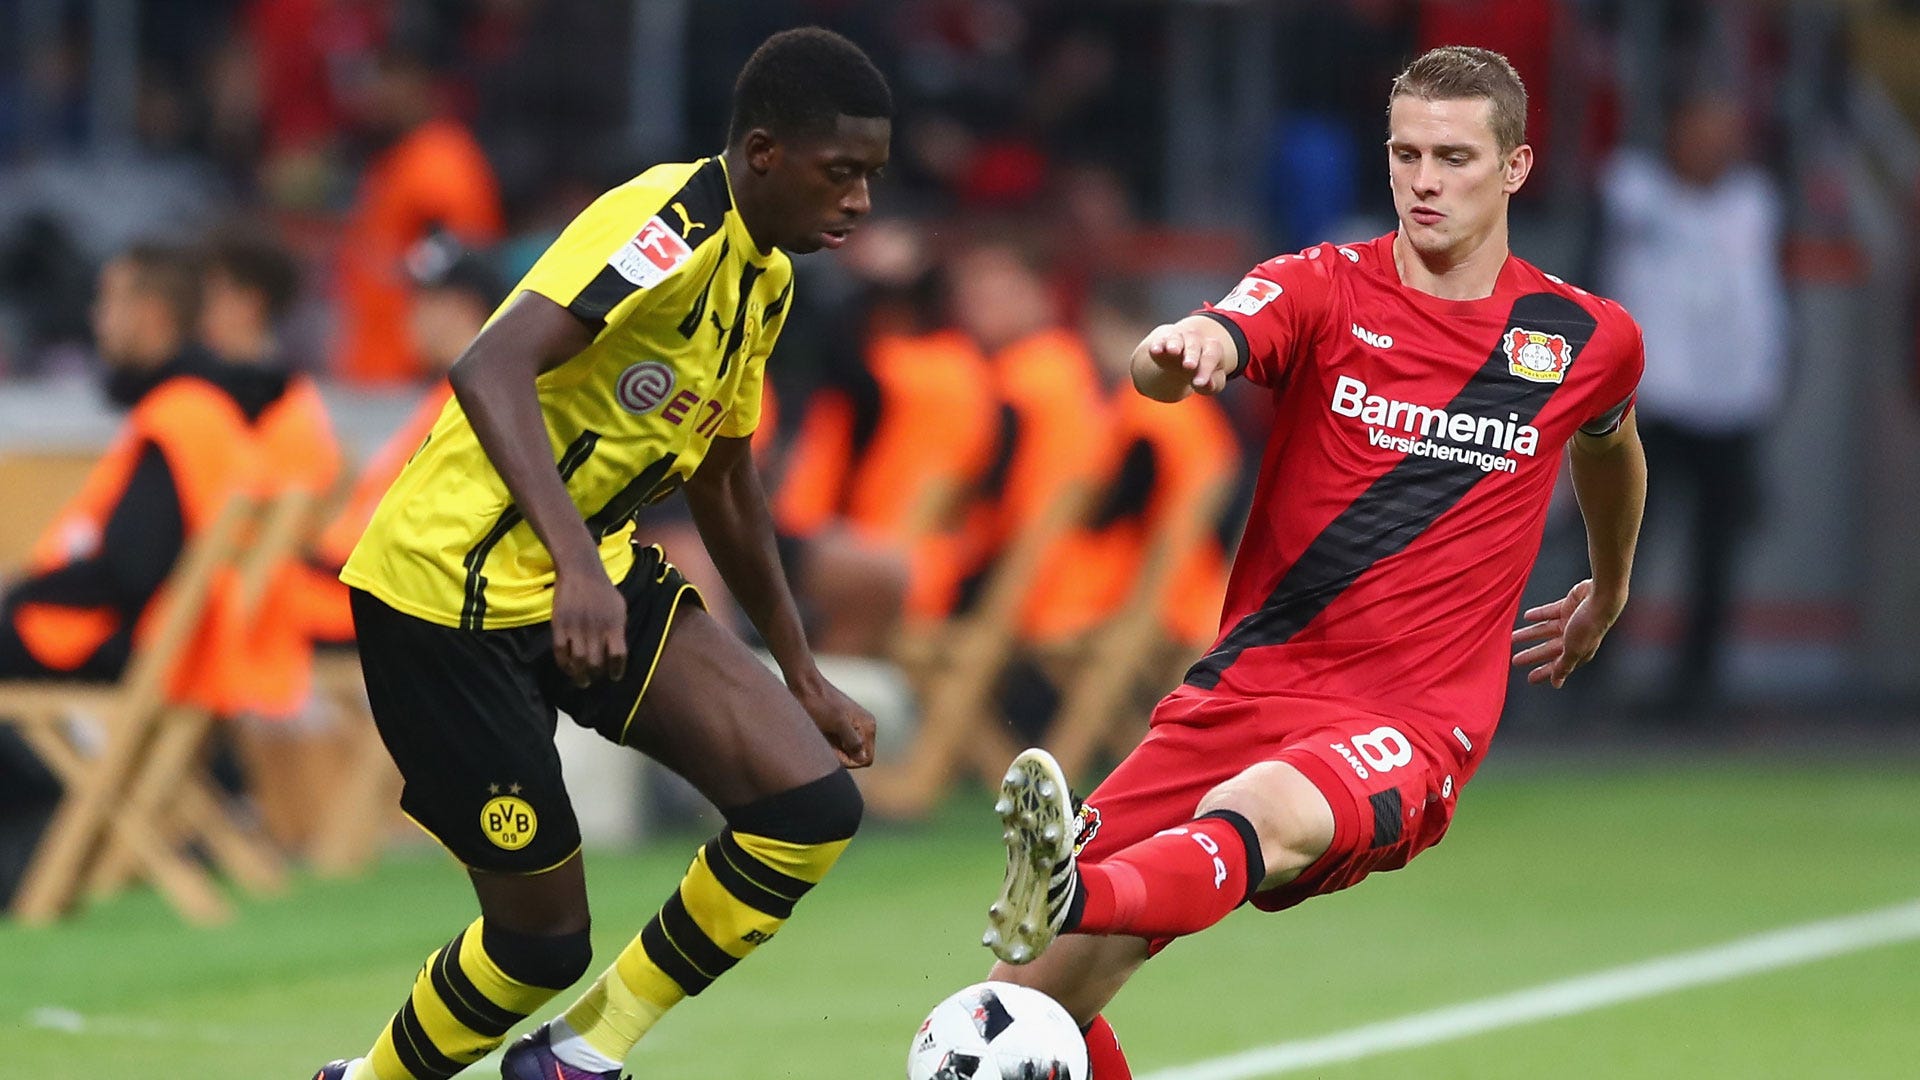 Ousmane Dembele(Borussia Dortmund) vs Lars Bender(Bayer Leverkusen)